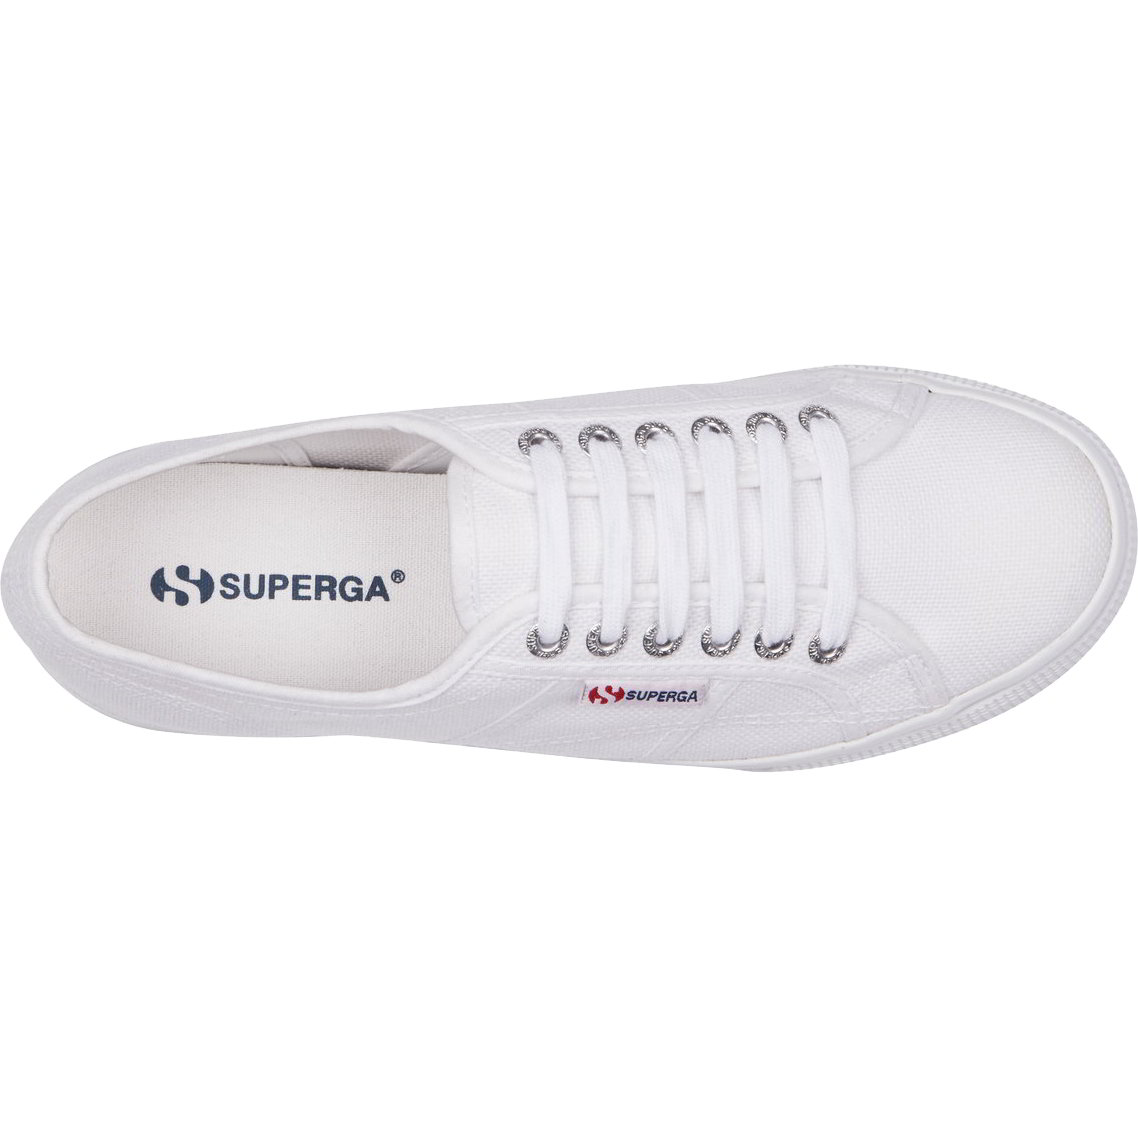 Superga Womens 2790 Linea Chunky Platform Trainers Shoes - UK 6.5